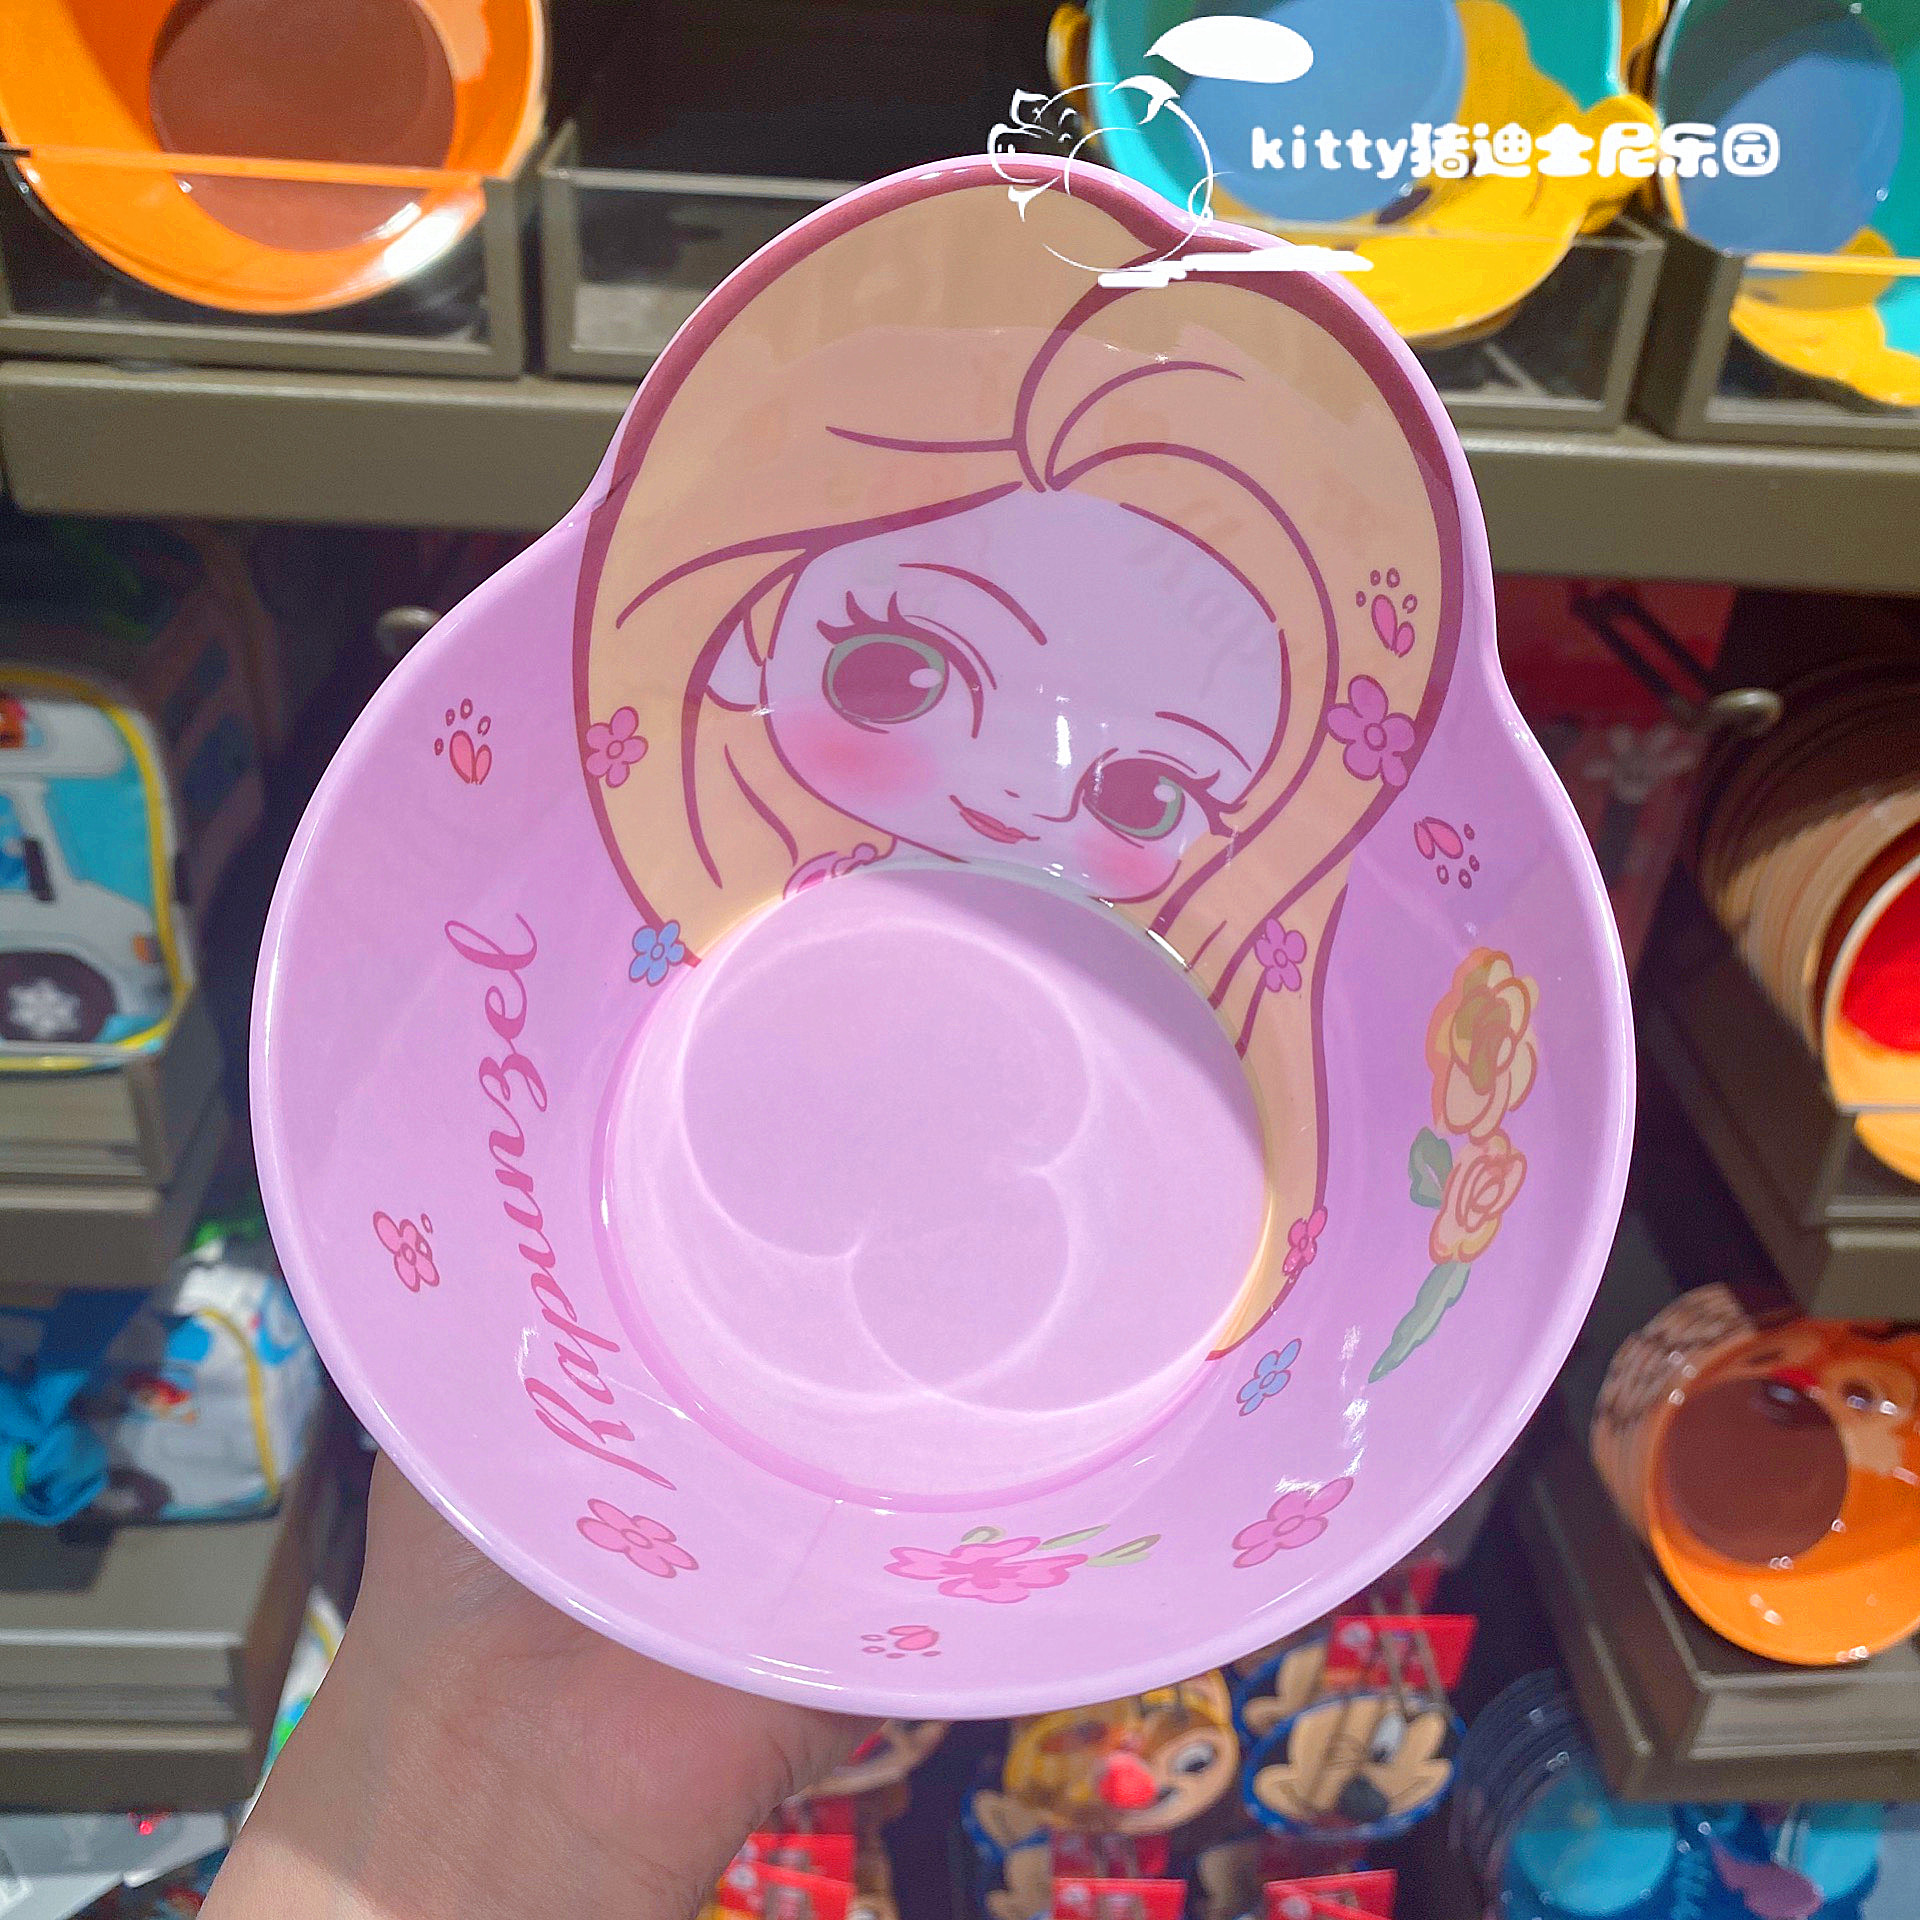 Chén ăn nhựa Melamine hình công chúa Rapunzel Princess nổi 3D màu tím cho bé gái - 78VNDP2483